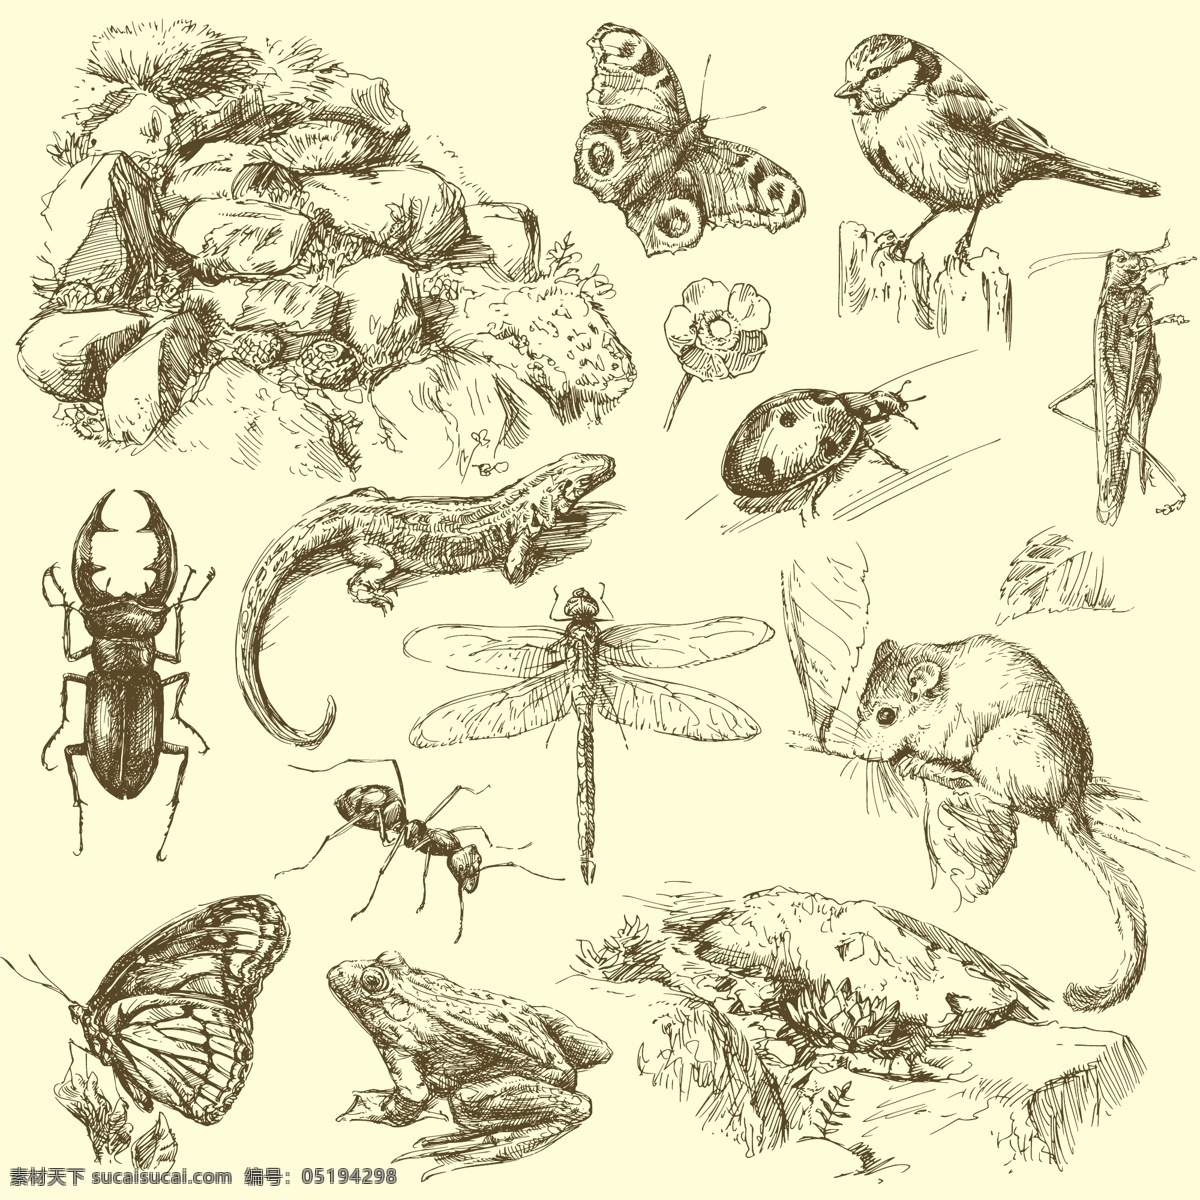 手绘动物 青蛙 老鼠 麻雀 昆虫 蚂蚁 蜻蜓 蝴蝶 手绘素描动物 手绘 剪影 素描 复古 简笔画 插画 动物 生物世界 矢量素材 矢量 美术绘画 文化艺术 野生动物